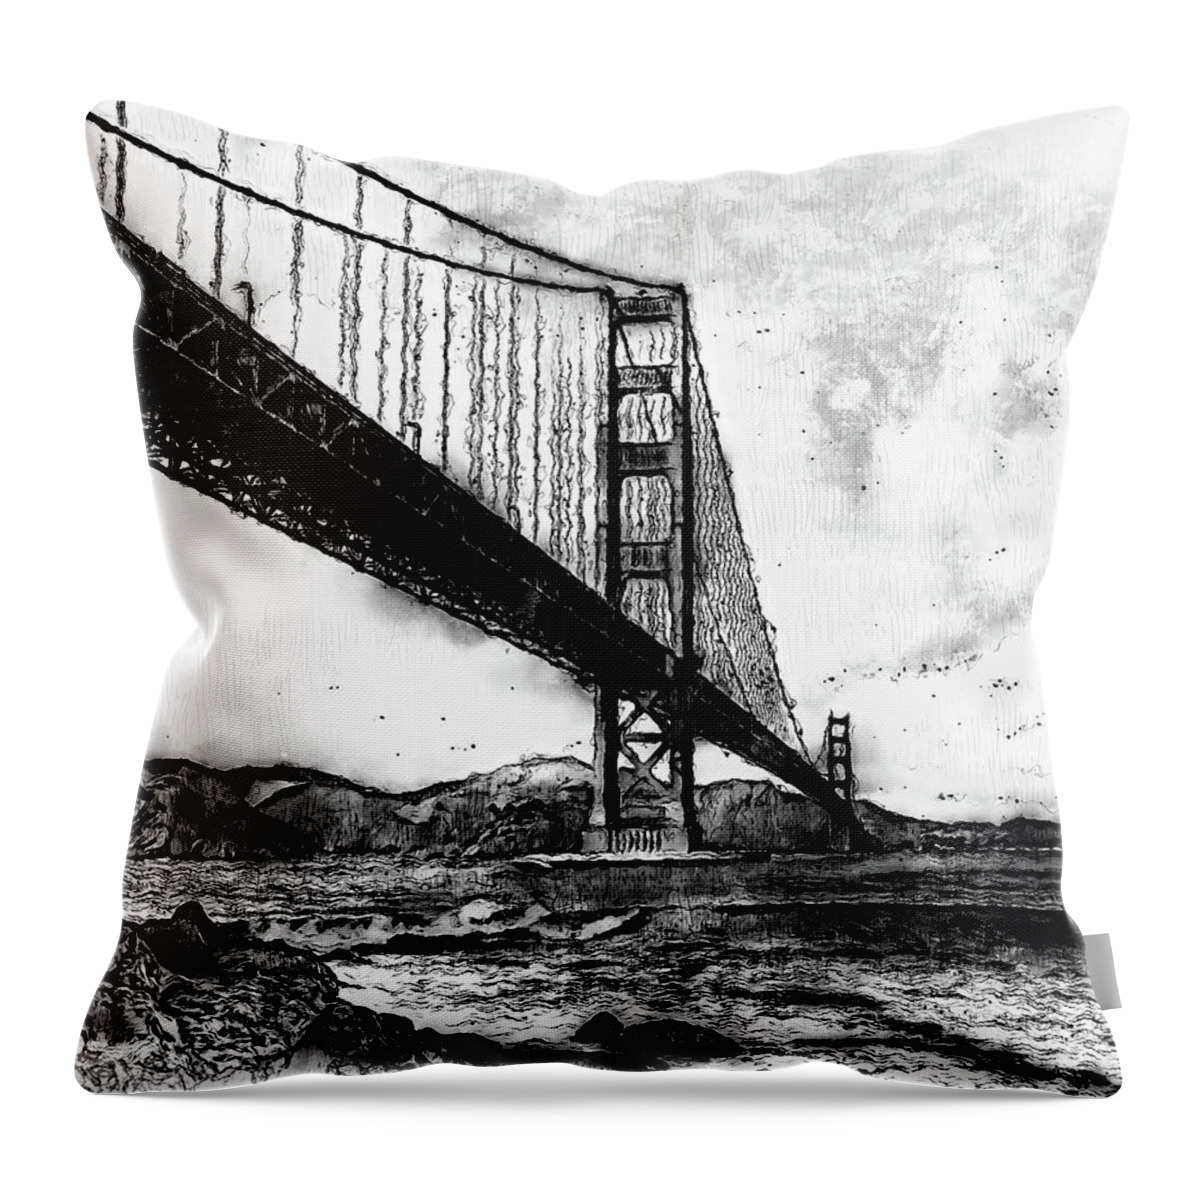 Golden Gate Bridge Throw Pillow featuring the digital art Golden Gate Bridge - Minimal 06 by AM FineArtPrints